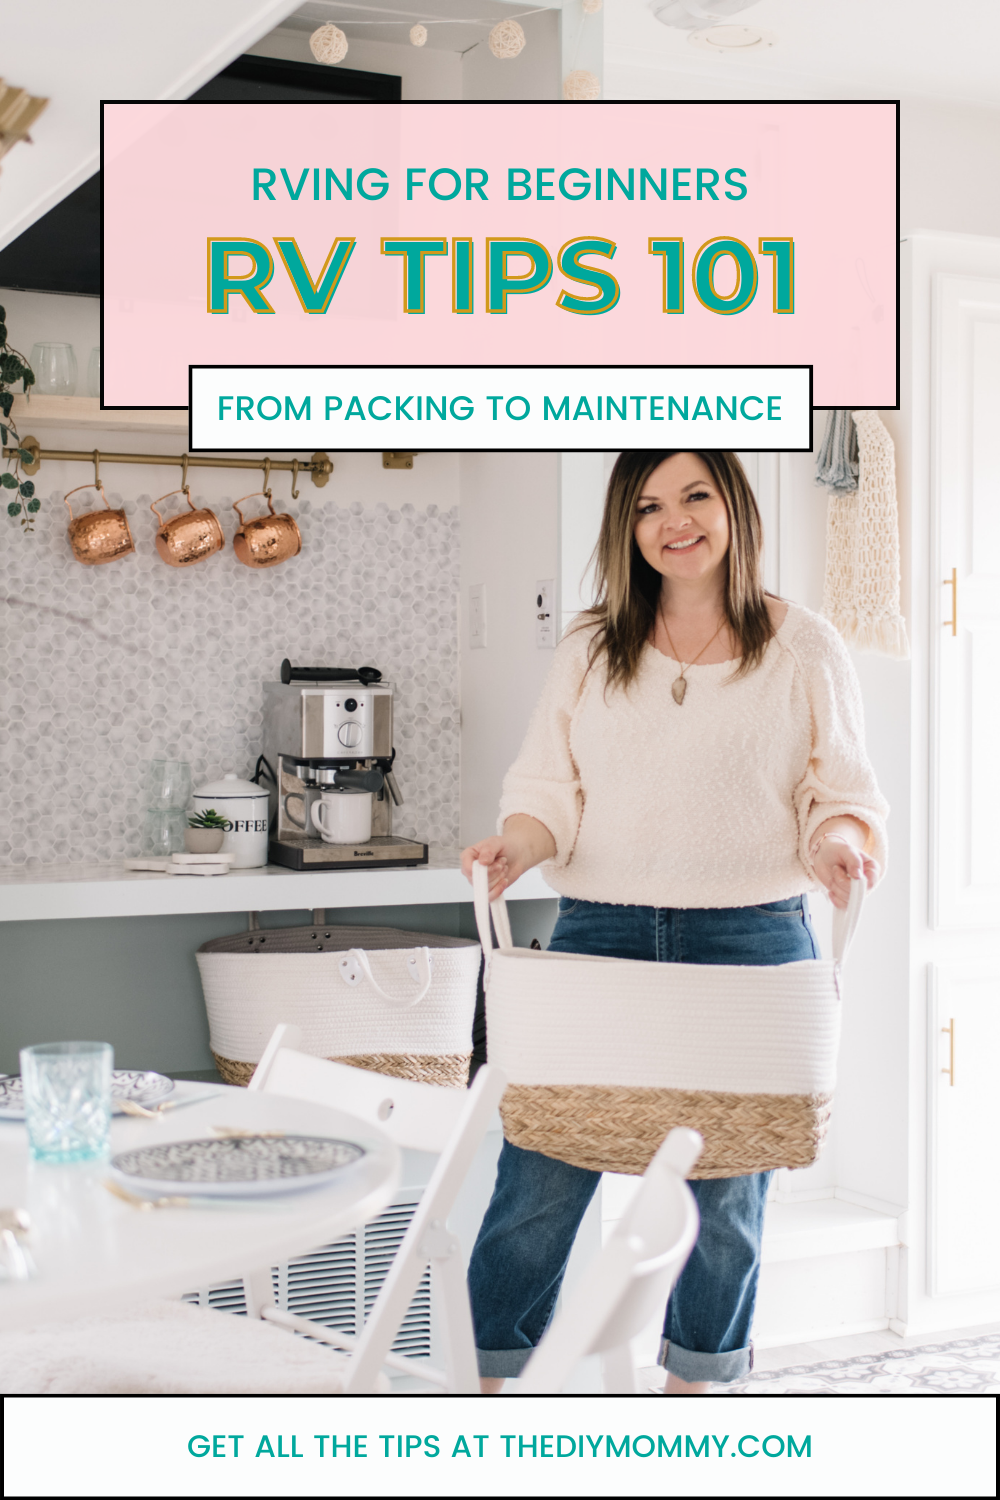 RV Tips 101 – RVing Guide for Beginners